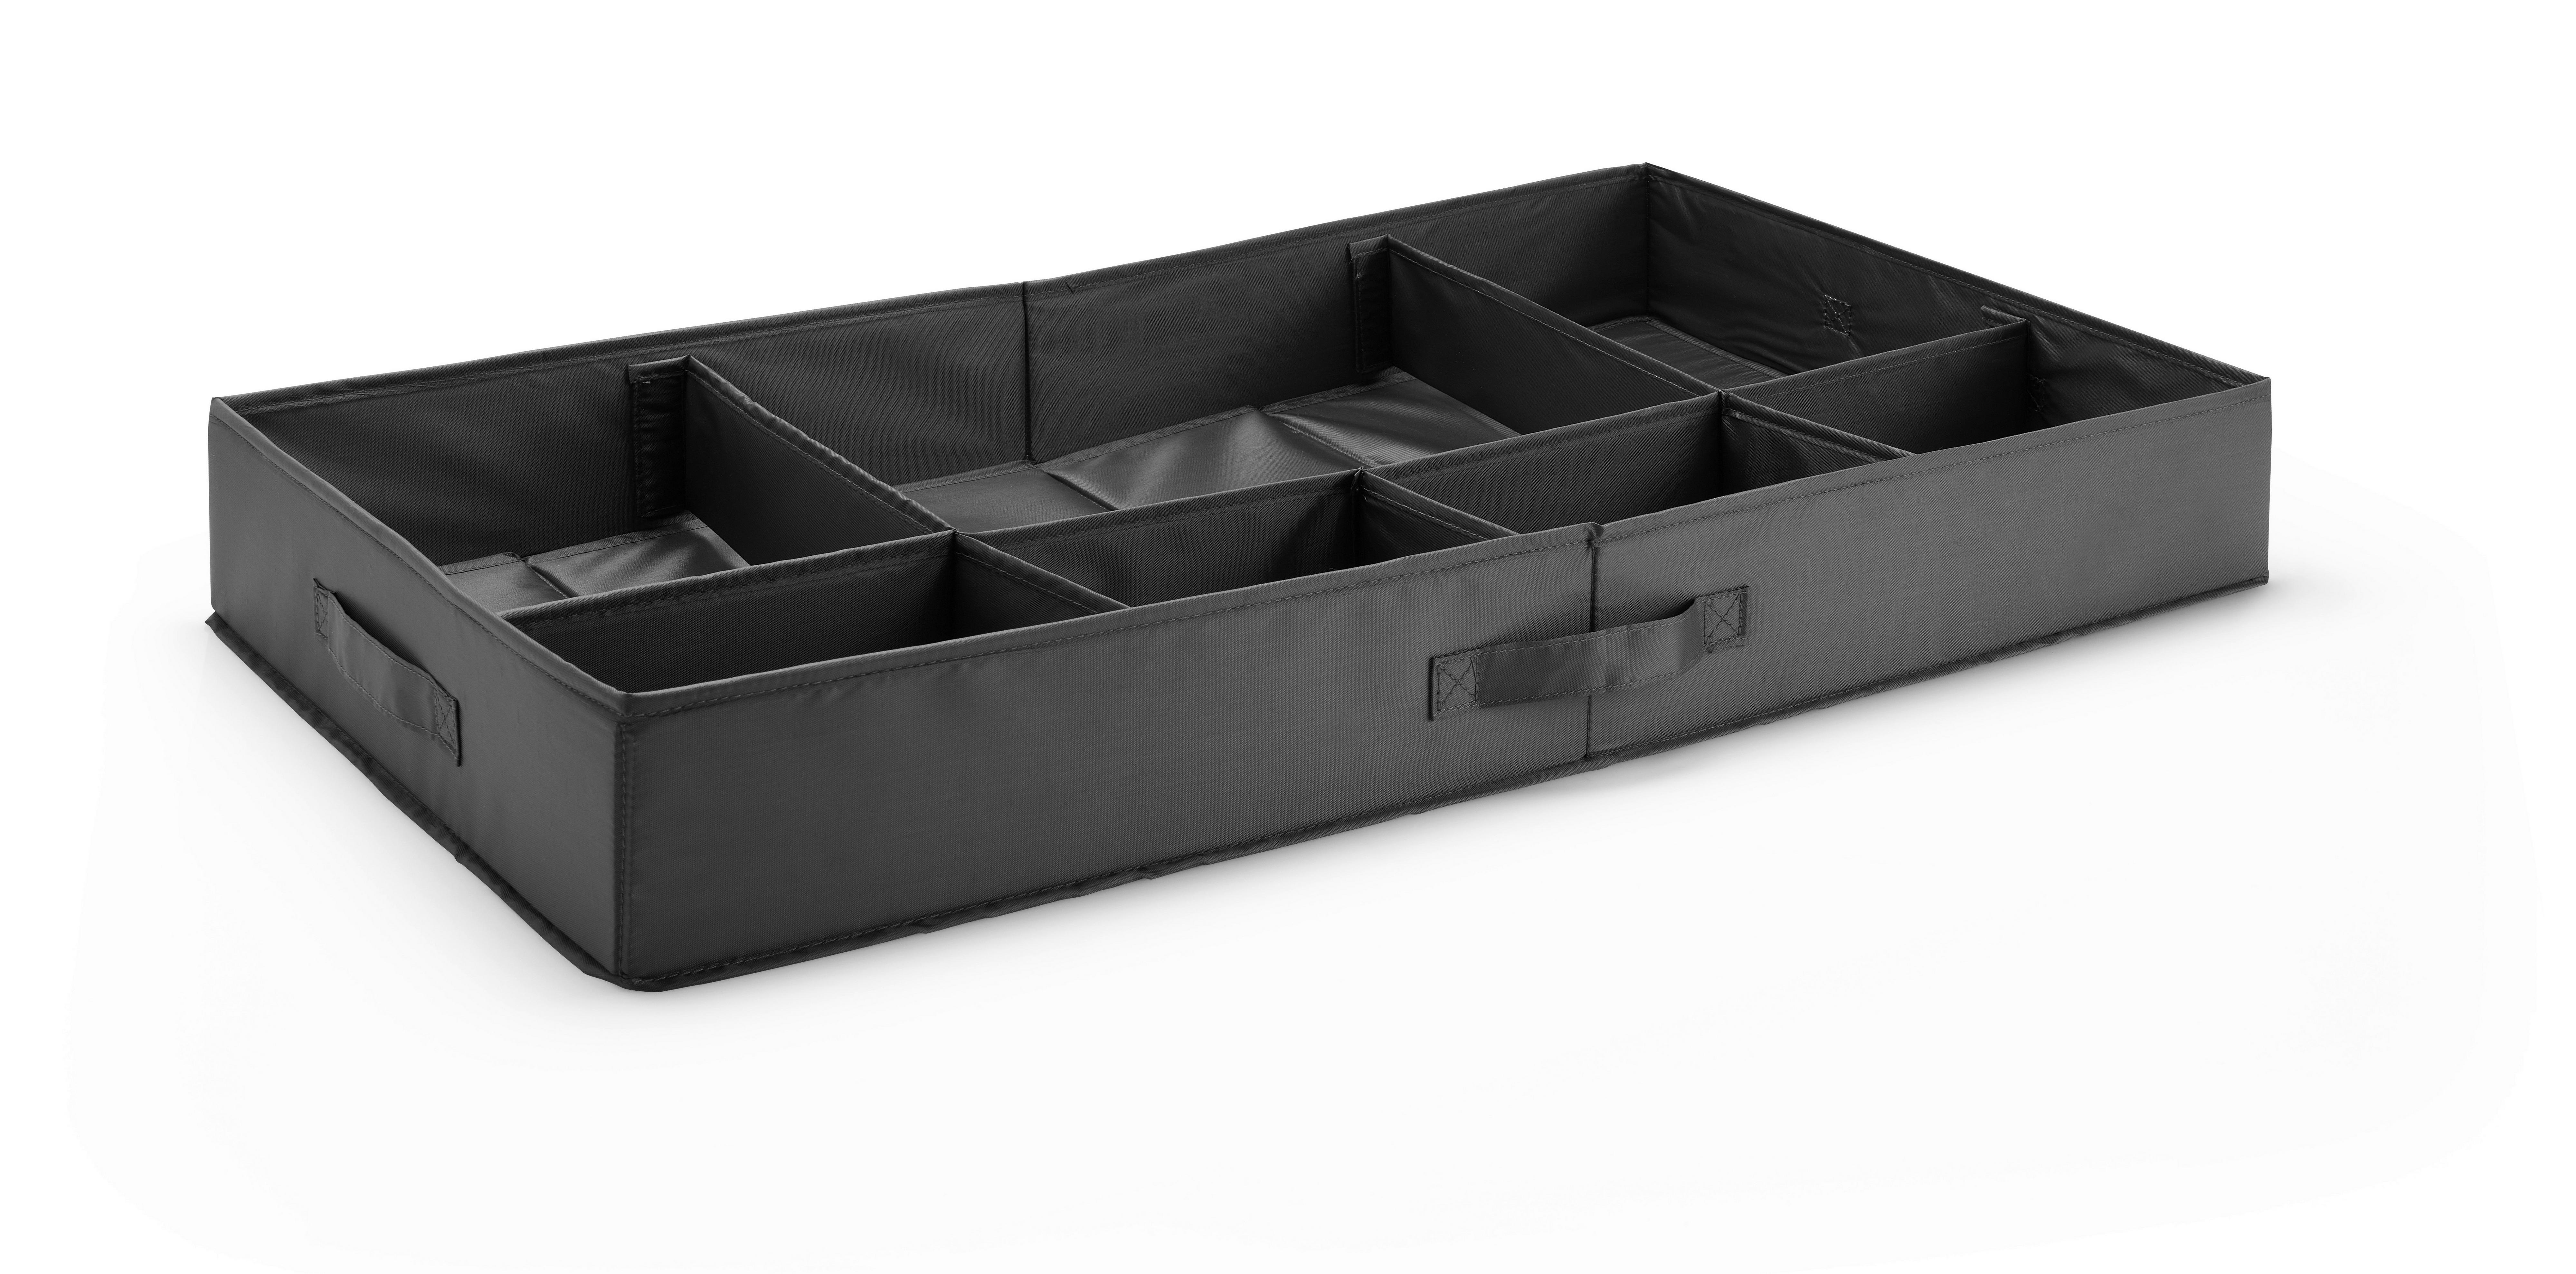 Zásuvkový Box Unit, L - sivá, Konvenčný, textil/plast (79,7/43,2/10,5cm) - Modern Living